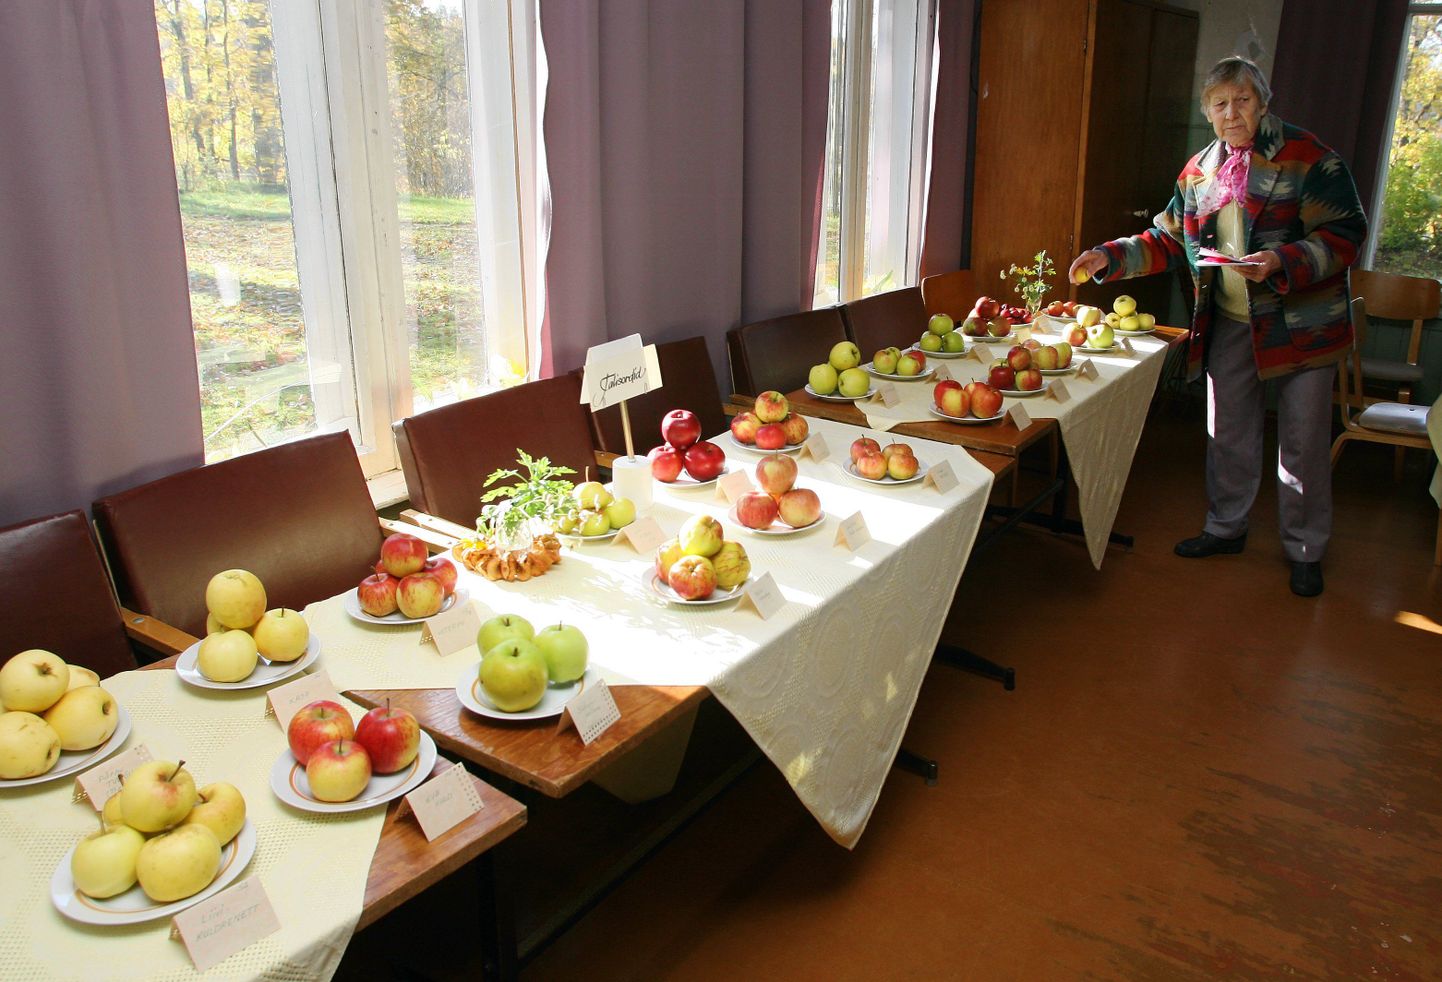 Näitusel oli 28 sorti õunu.